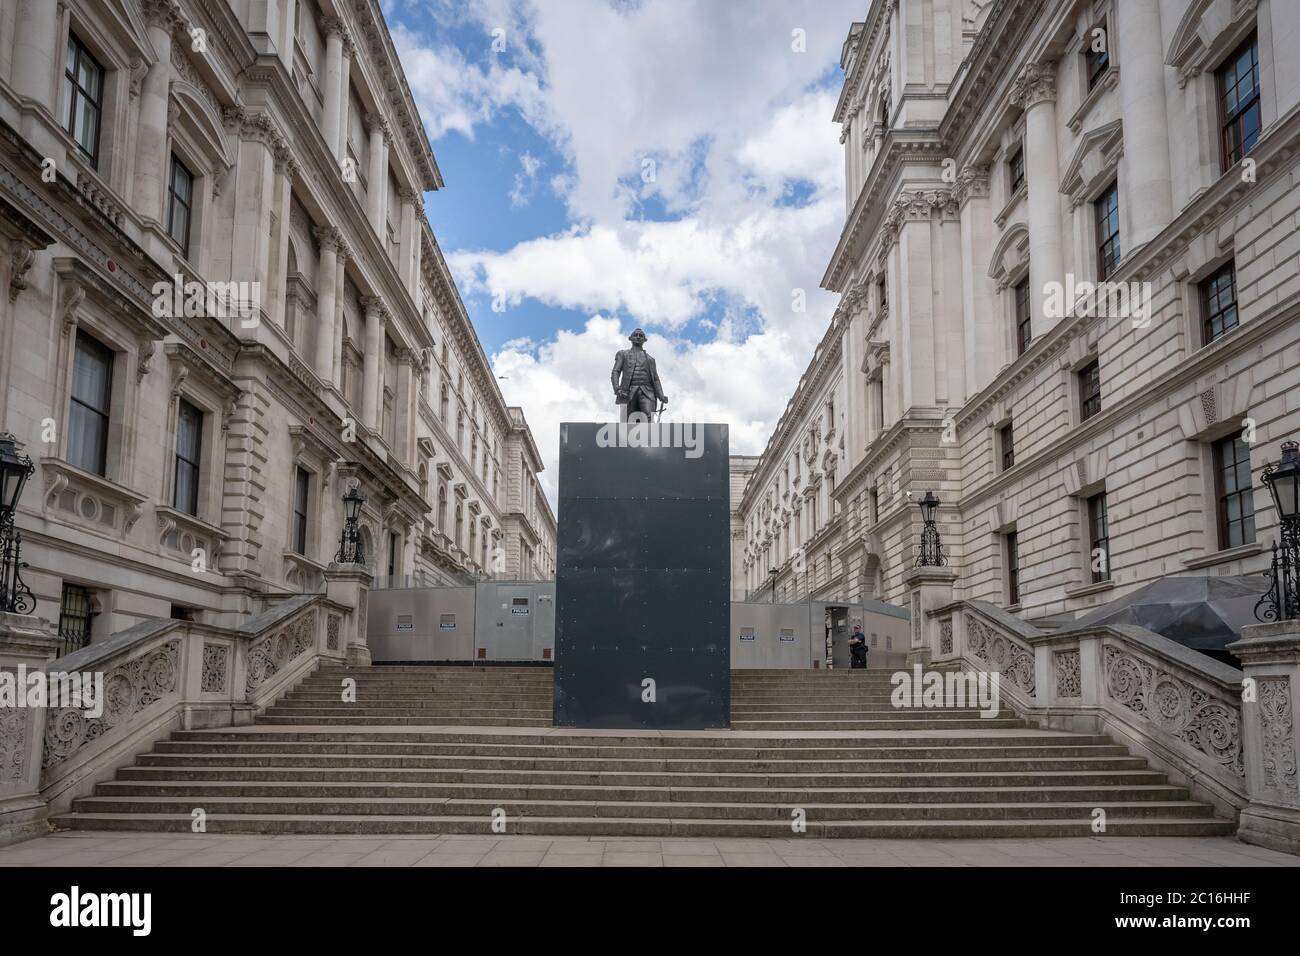 Monumento al General Robert Clive se alza rodeado de revestimiento protector en Charles Street, Whitehall, Londres, Reino Unido. Foto de stock